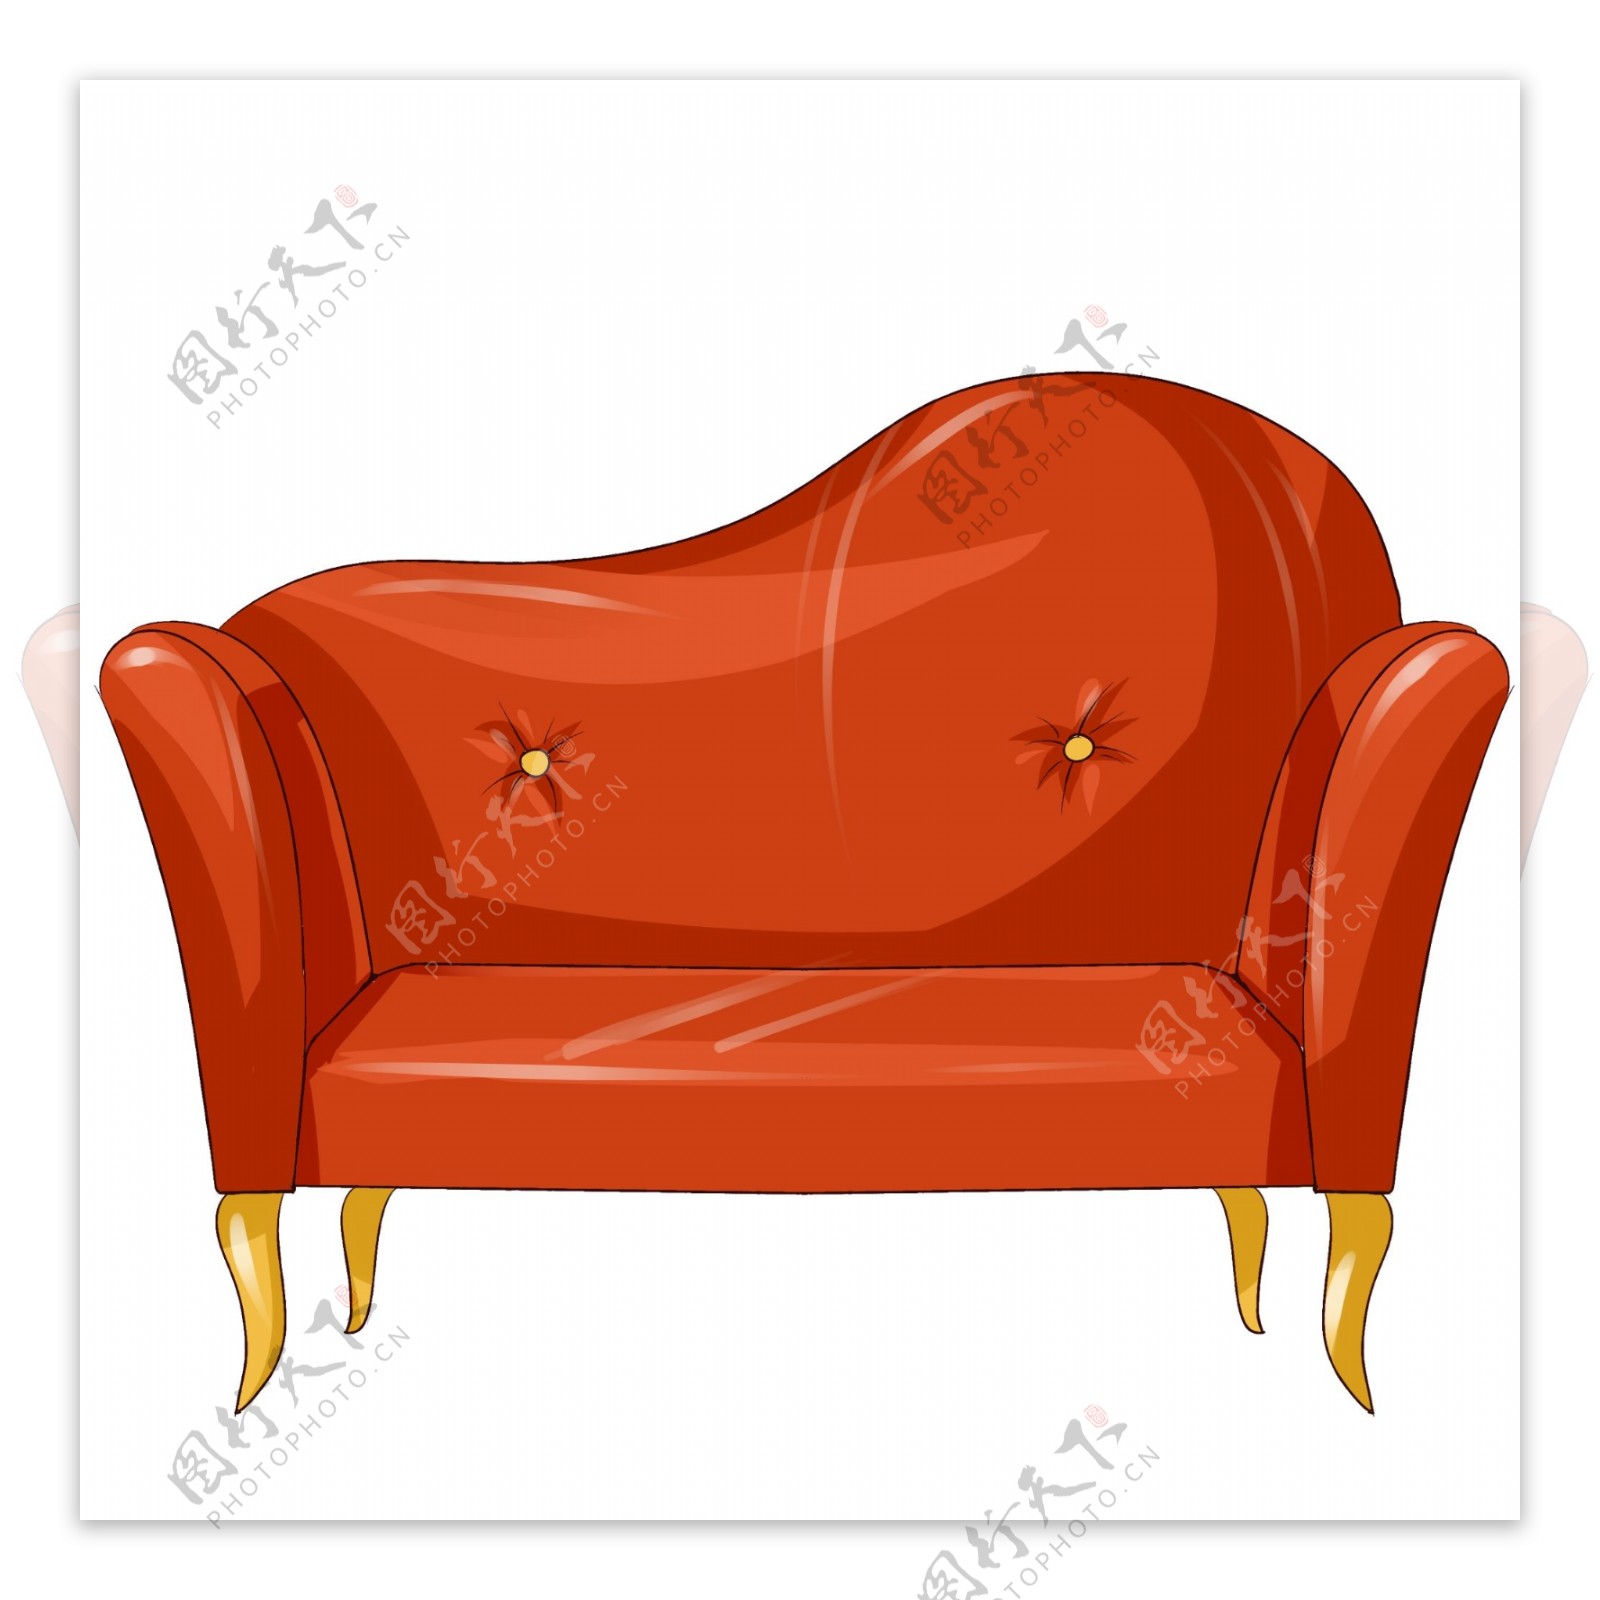 原创手绘家具欧式双人沙发橘色红色素材